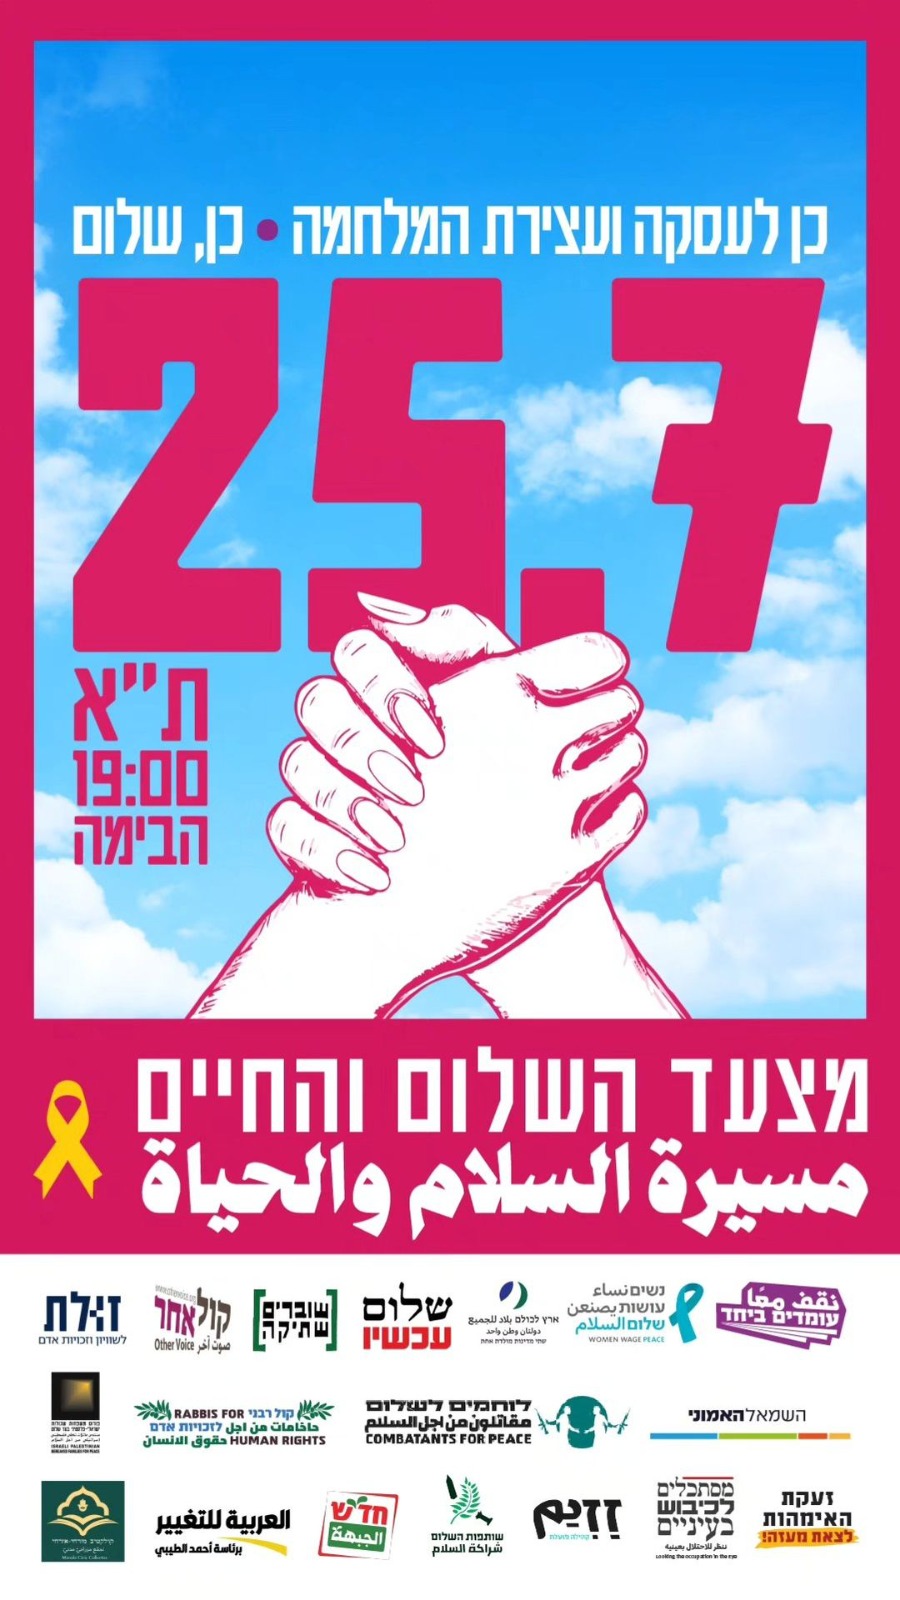 اليوم في تل أبيب: مسيرة السلام والحياة برسالة واضحة "نعم، صفقة .. نعم، سلام"